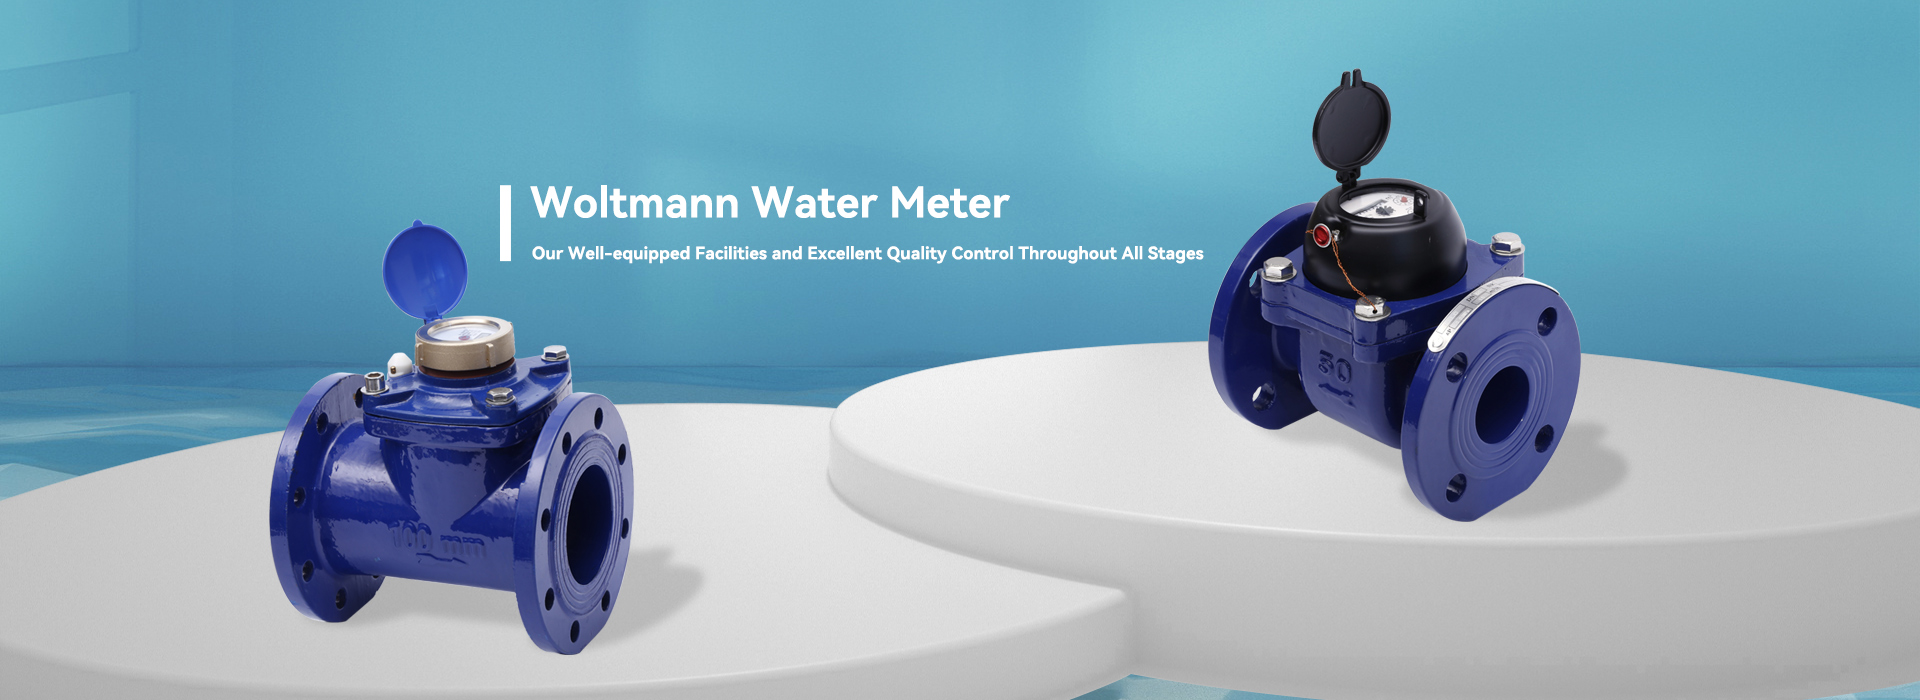 Woltmann पानी मिटर निर्माता र आपूर्तिकर्ता